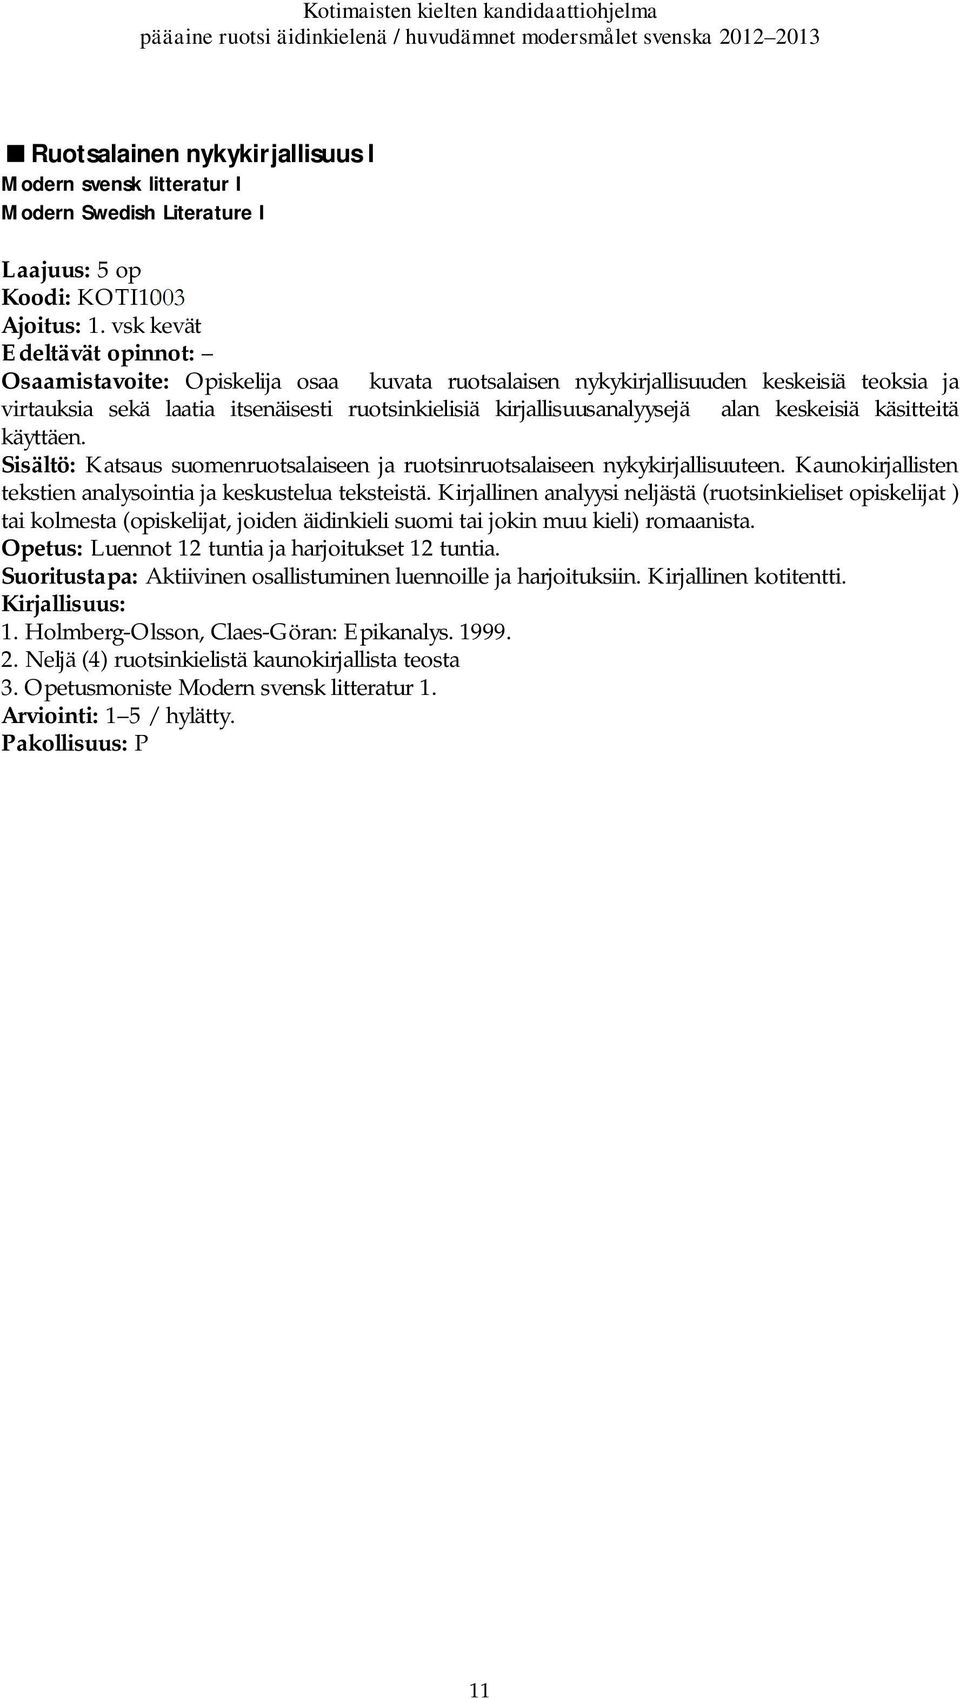 käsitteitä käyttäen. Sisältö: Katsaus suomenruotsalaiseen ja ruotsinruotsalaiseen nykykirjallisuuteen. Kaunokirjallisten tekstien analysointia ja keskustelua teksteistä.